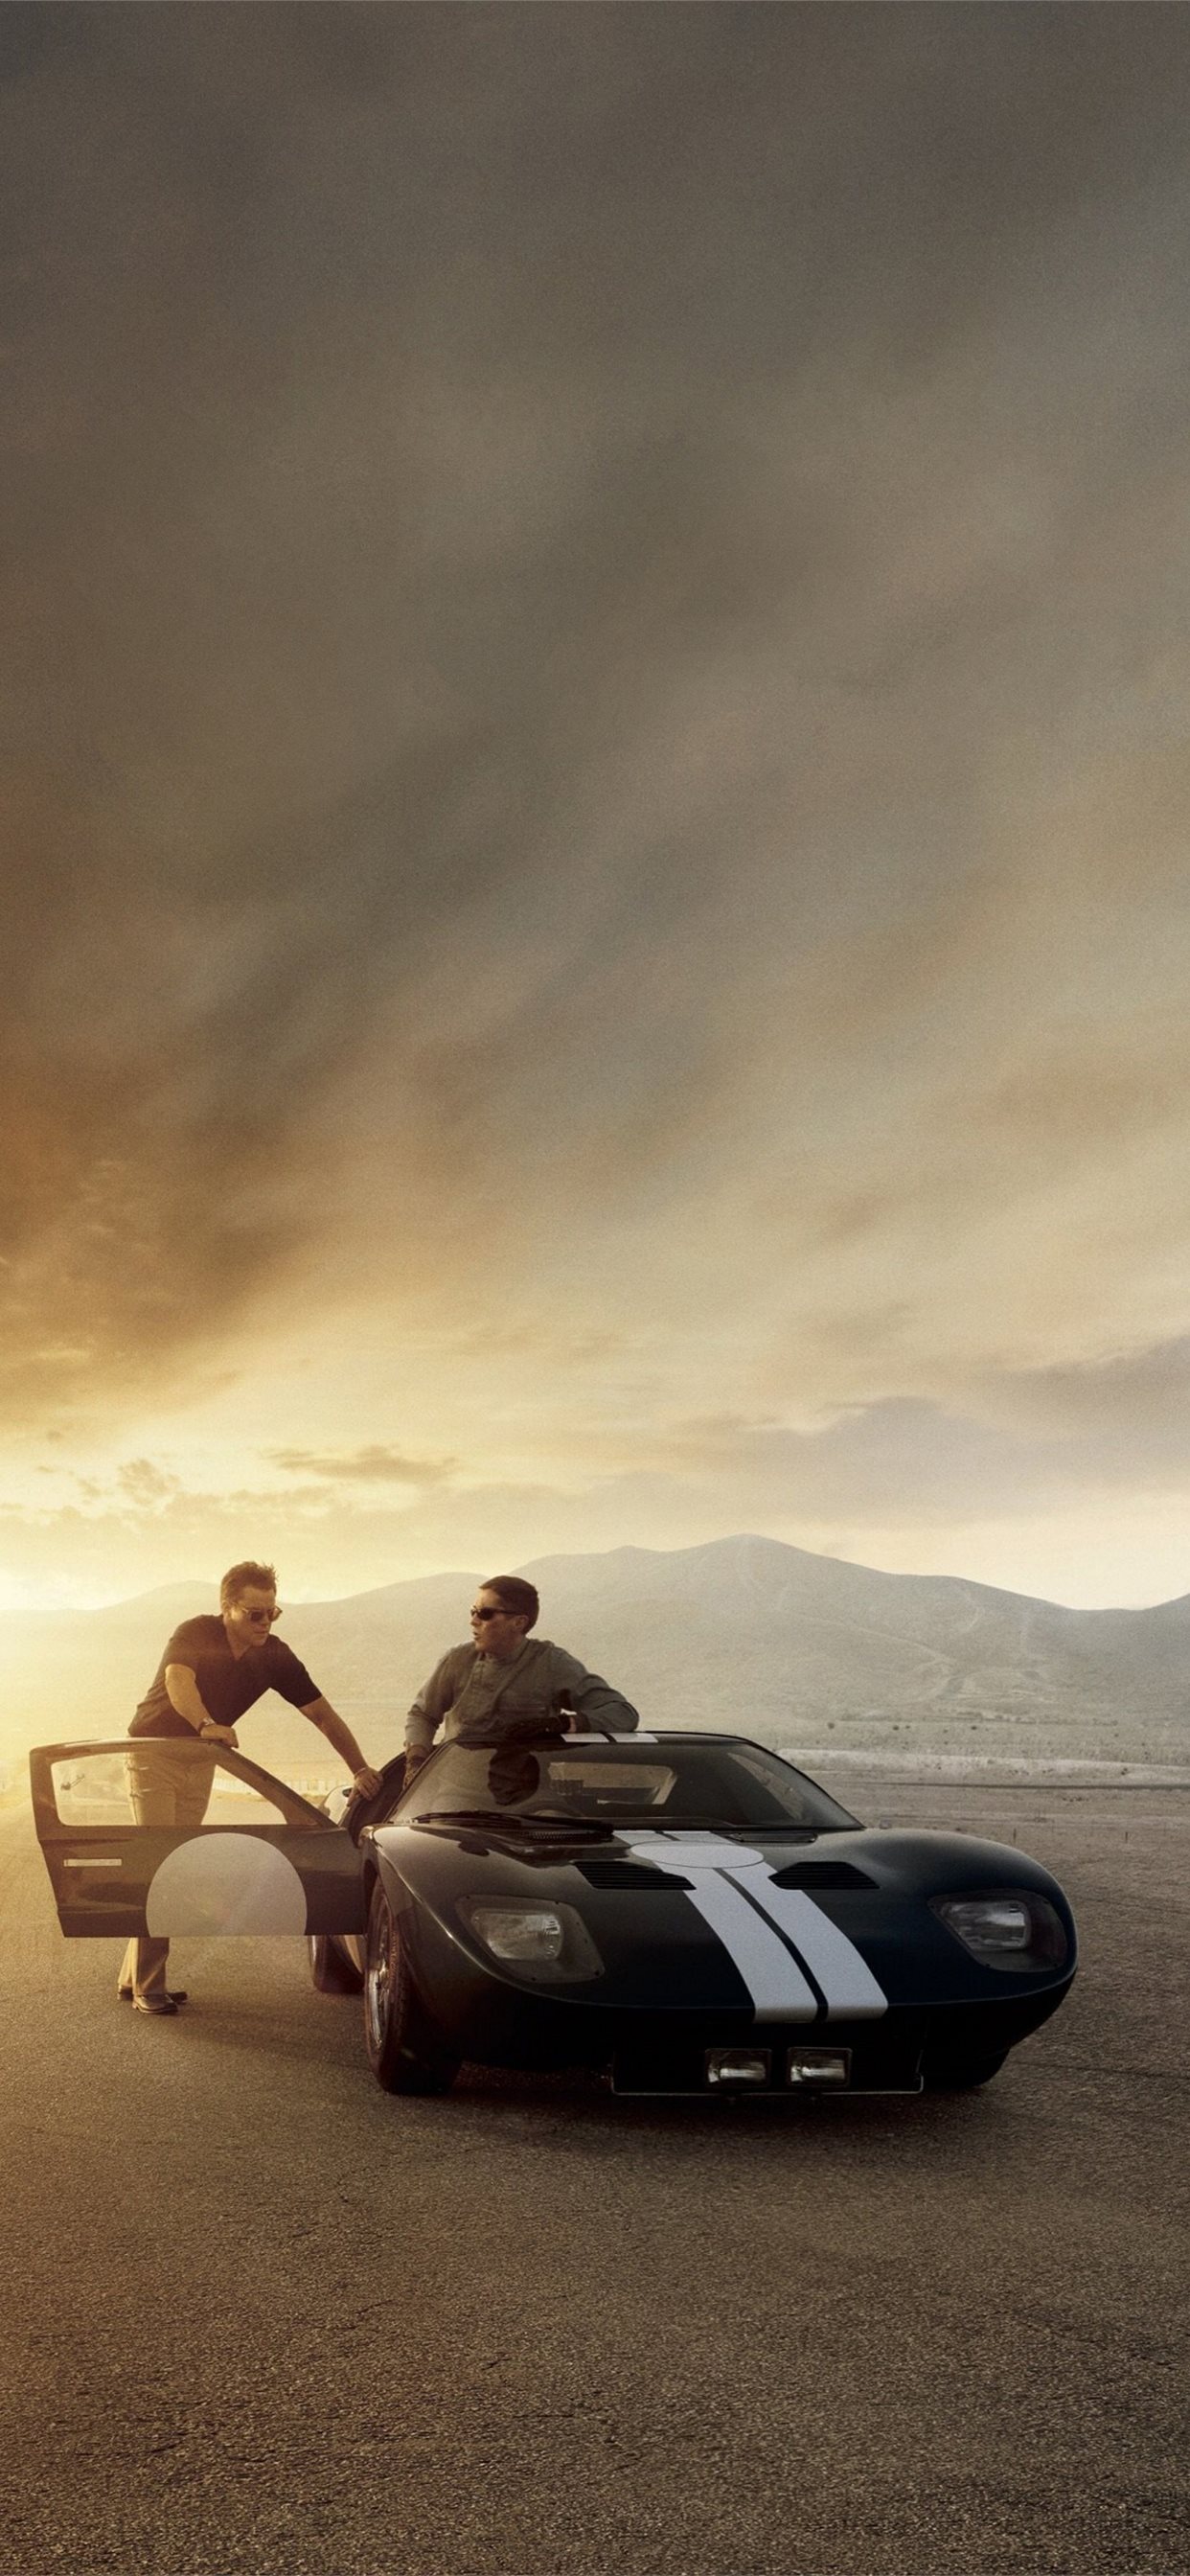 Ford v Ferrari Movie Poster Car Christian Bale Matt Damon 4K Wallpaper  5789